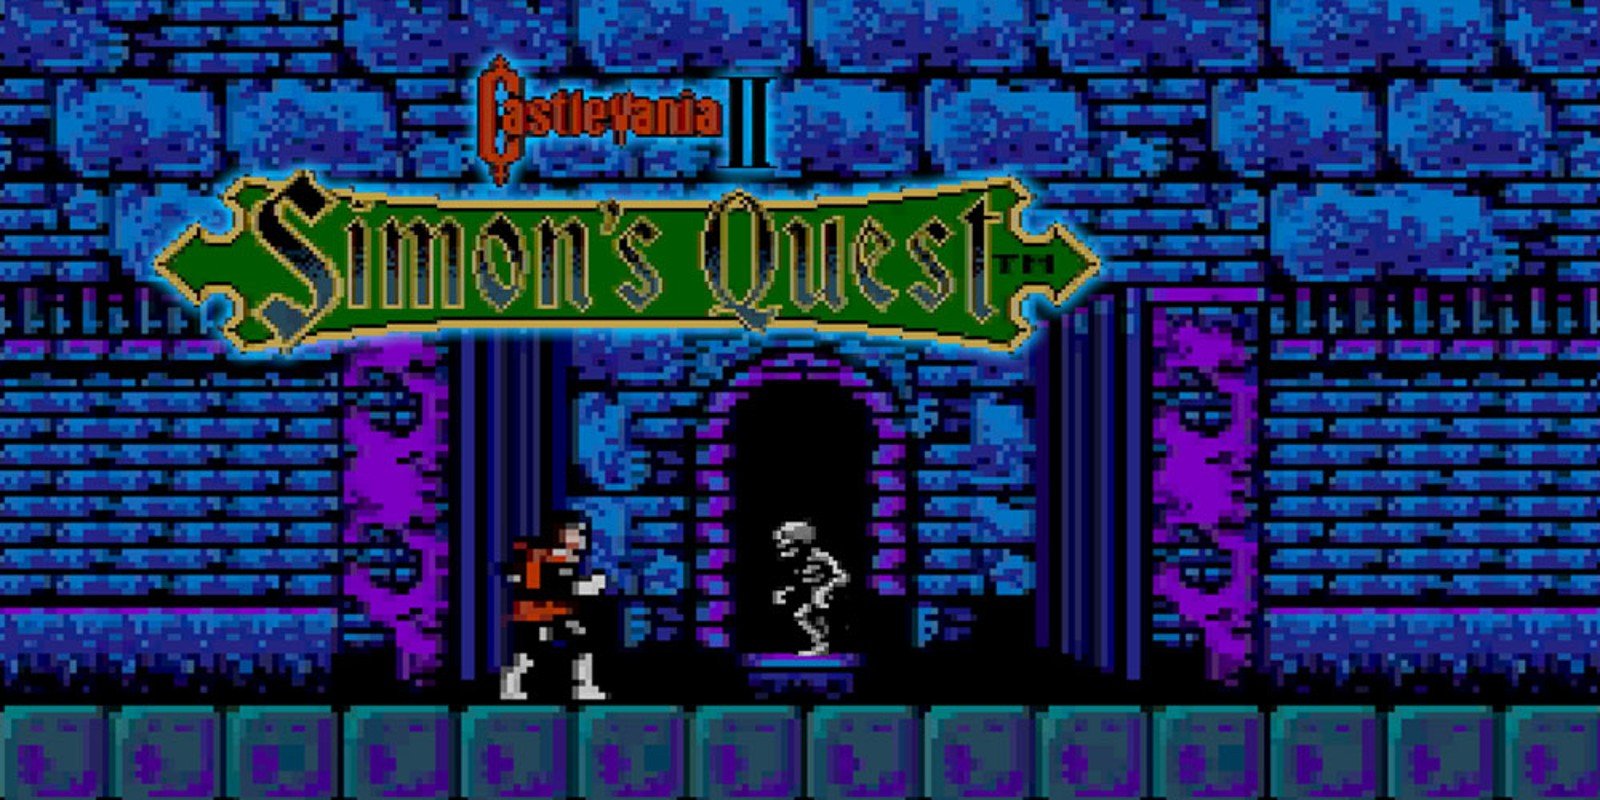 Apesar de ter uma trama interessante, Simon's Quest não é um dos favoritos dos fãs